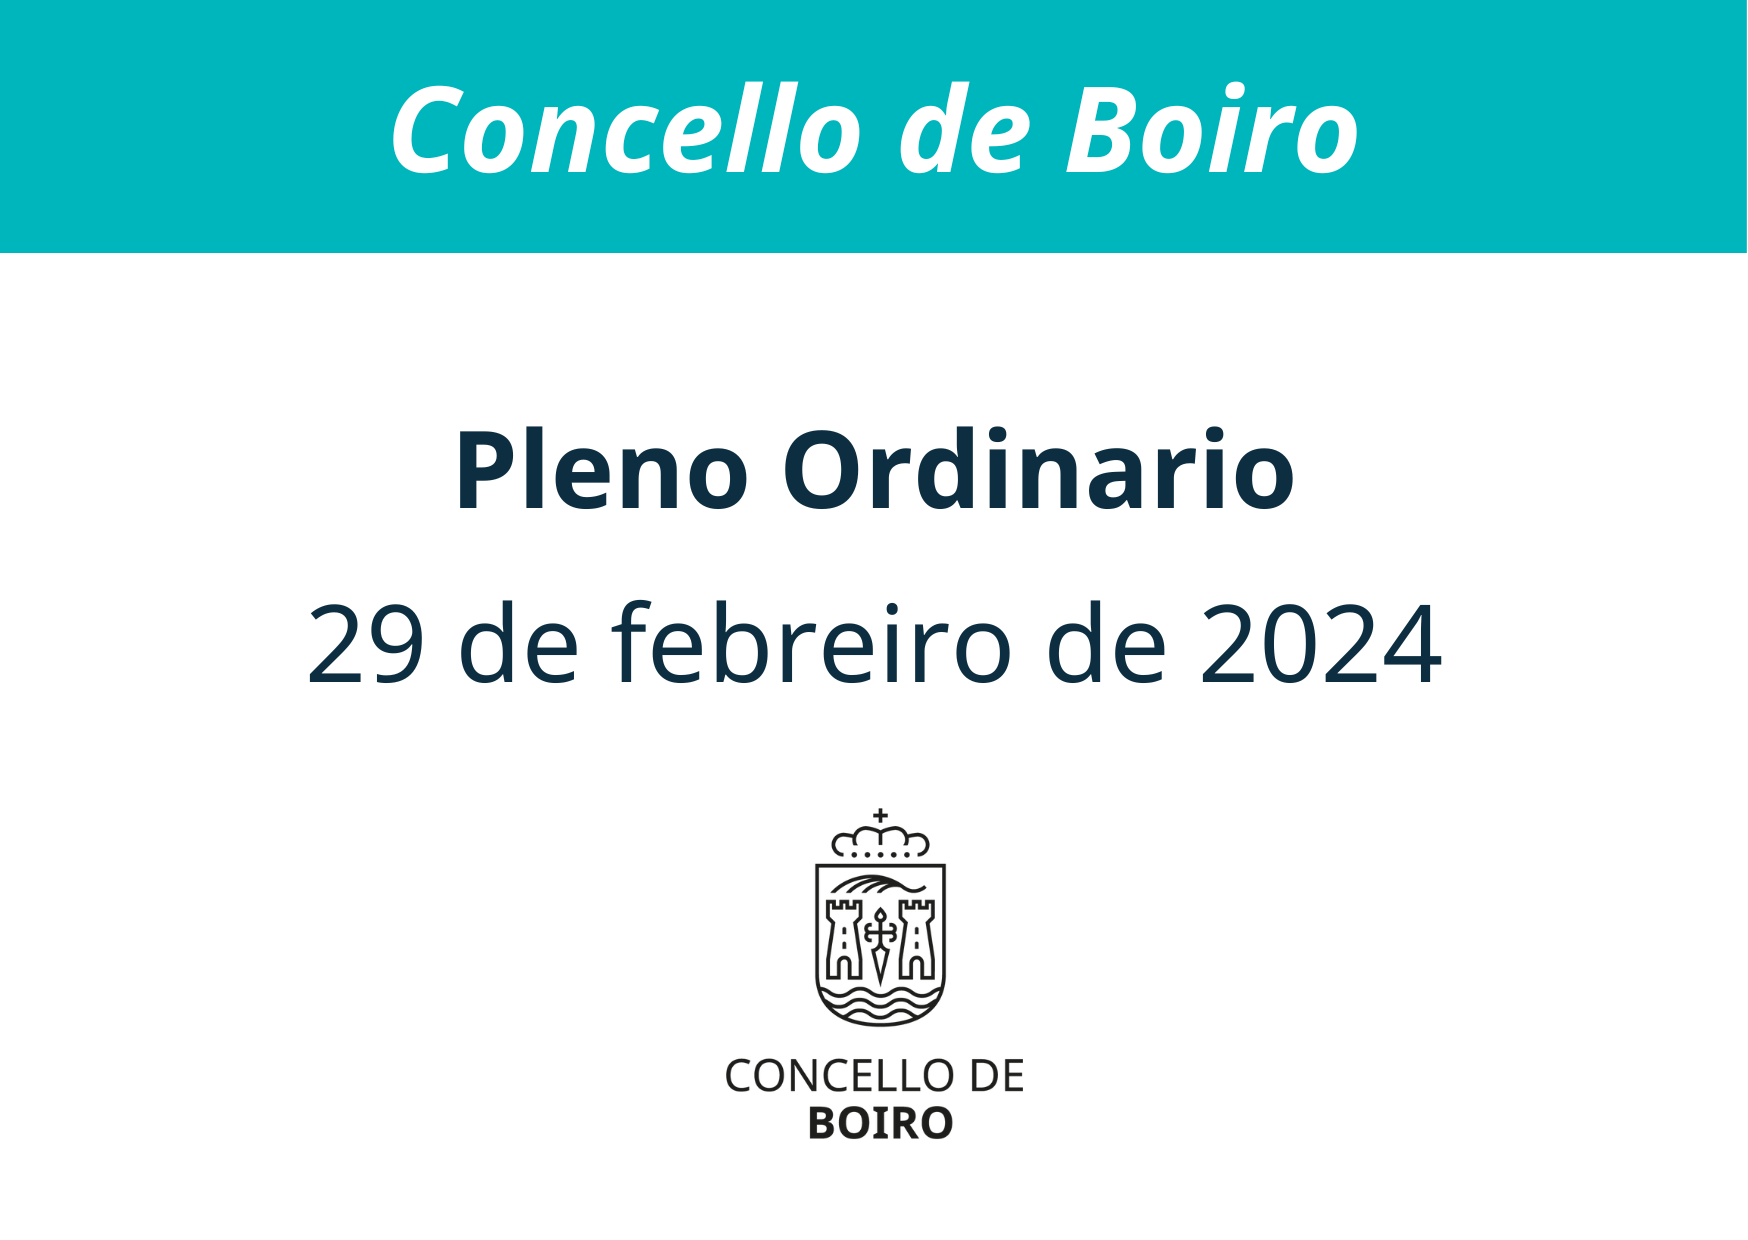 Pleno ordinario do 29 de febreiro de 2024 | Concello de Boiro 